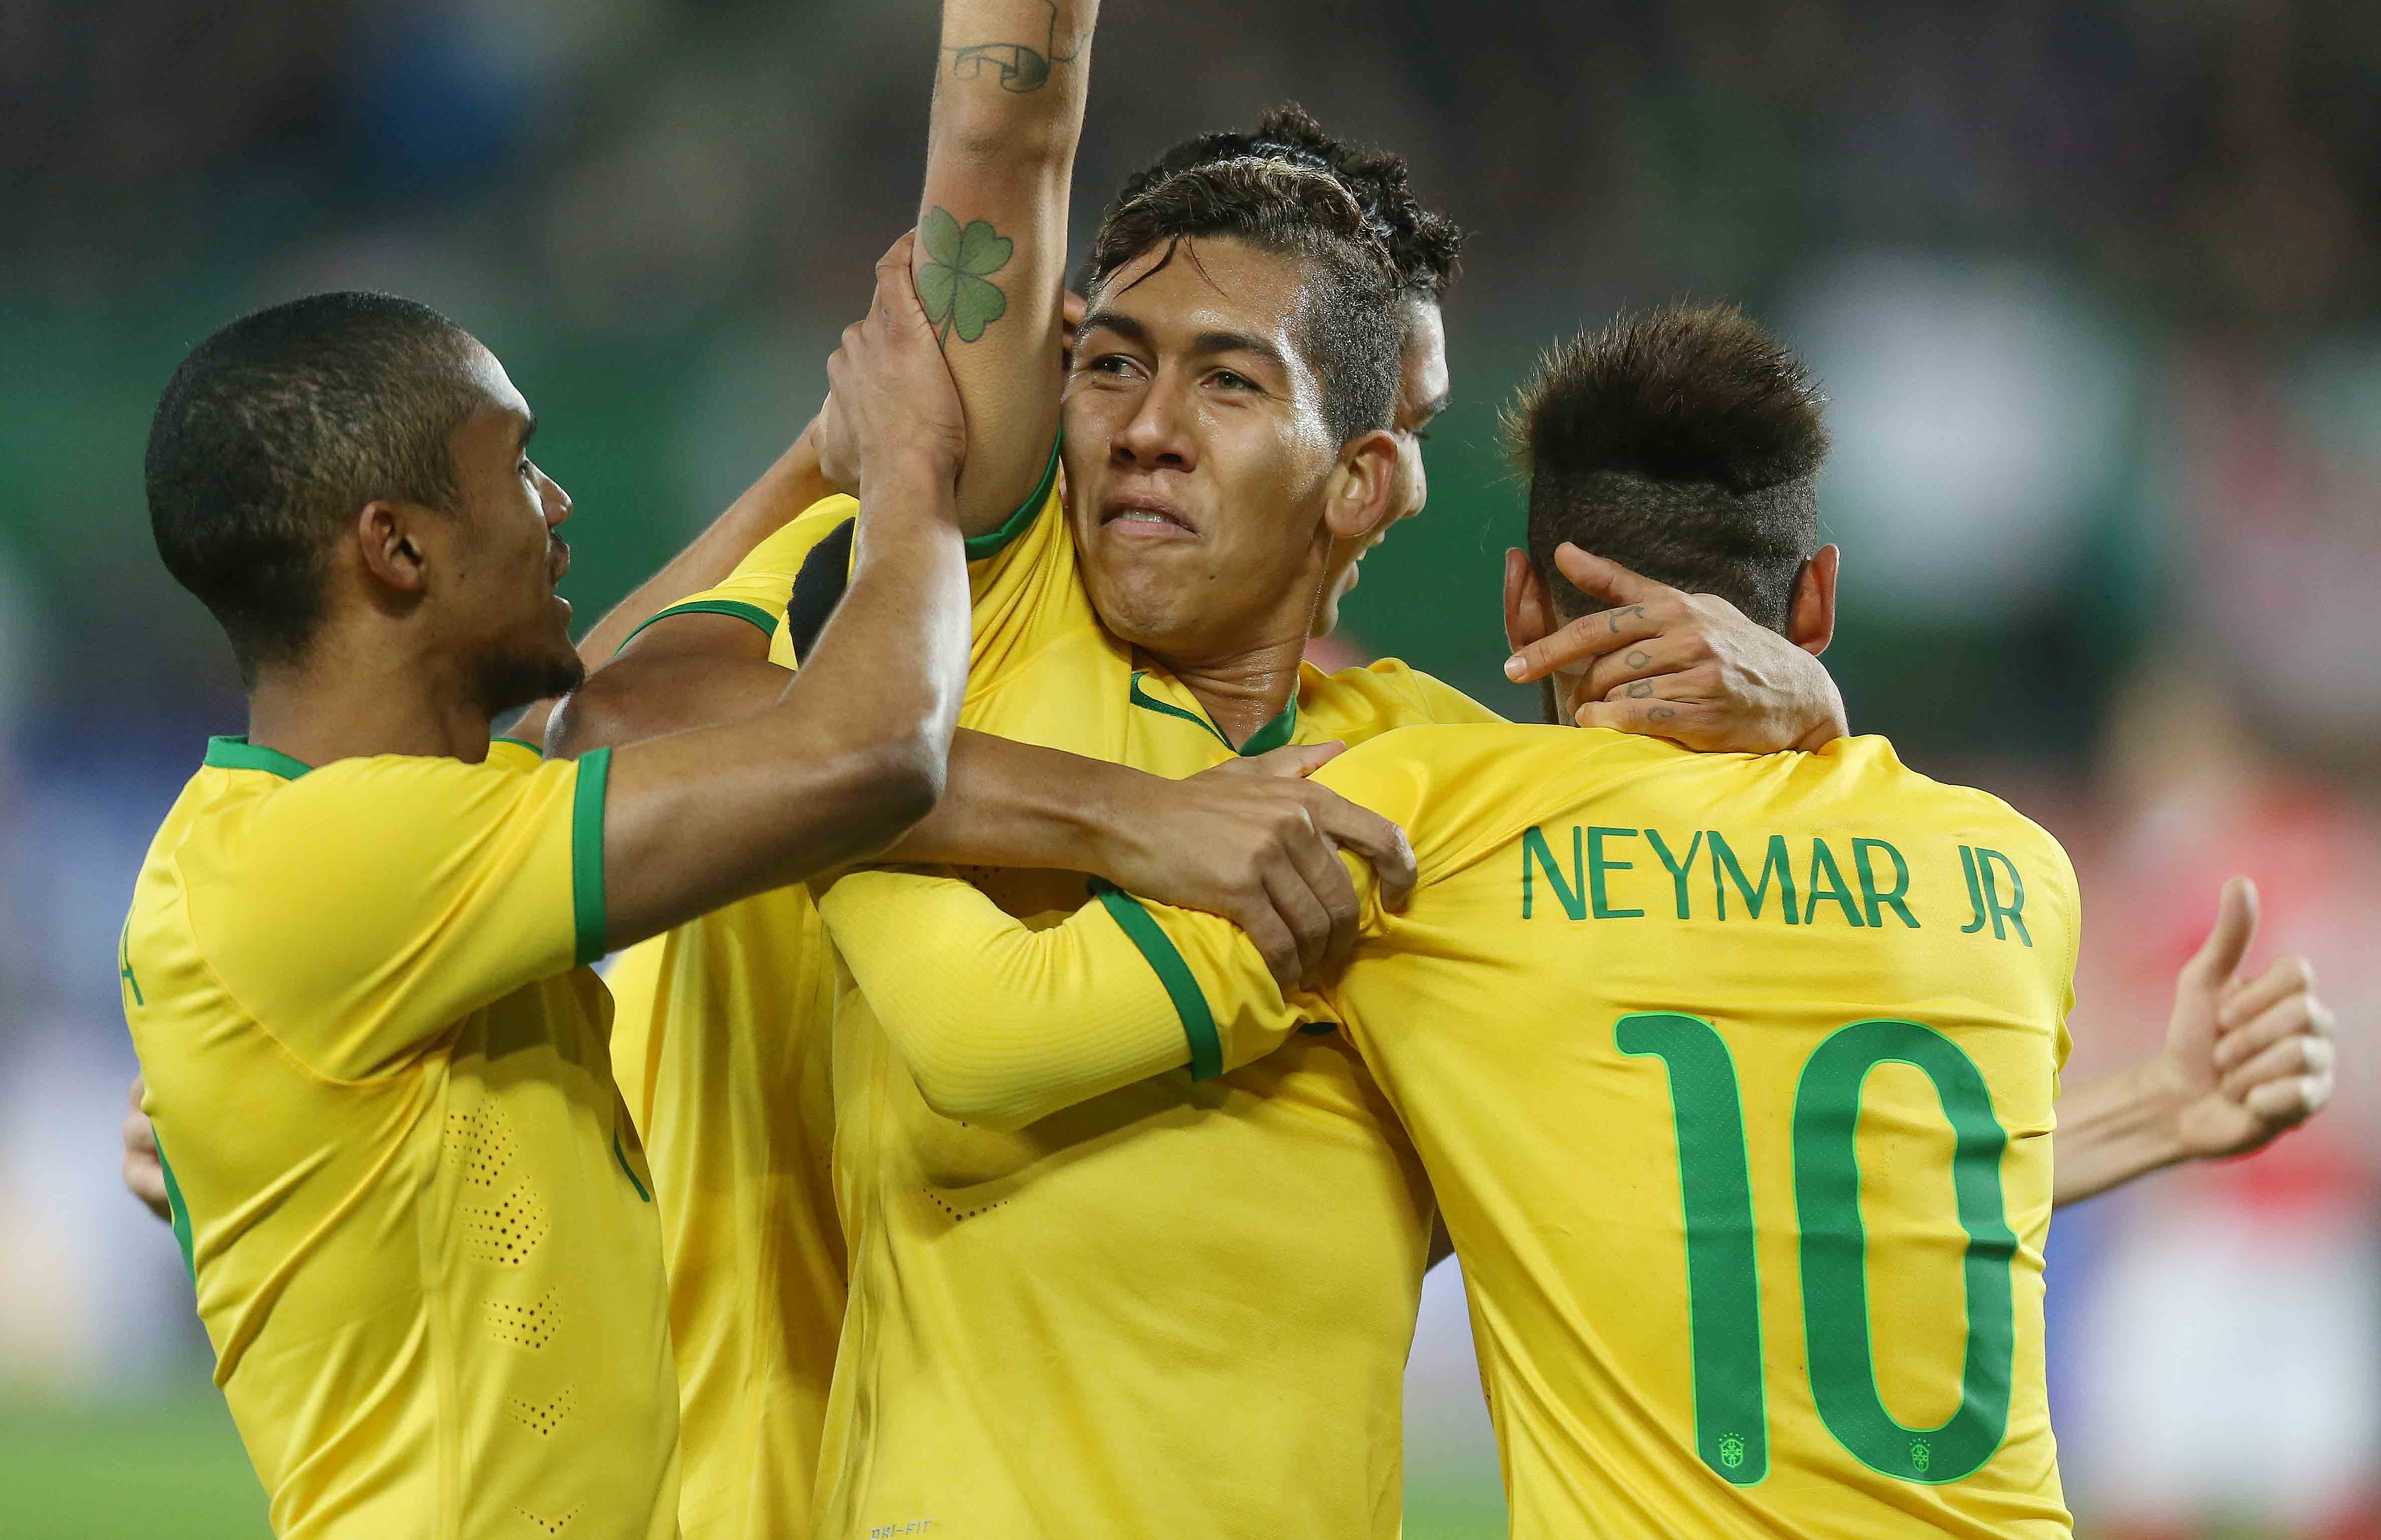 Seleção Brasileira: como os jogadores da Copa do Mundo 2018 se